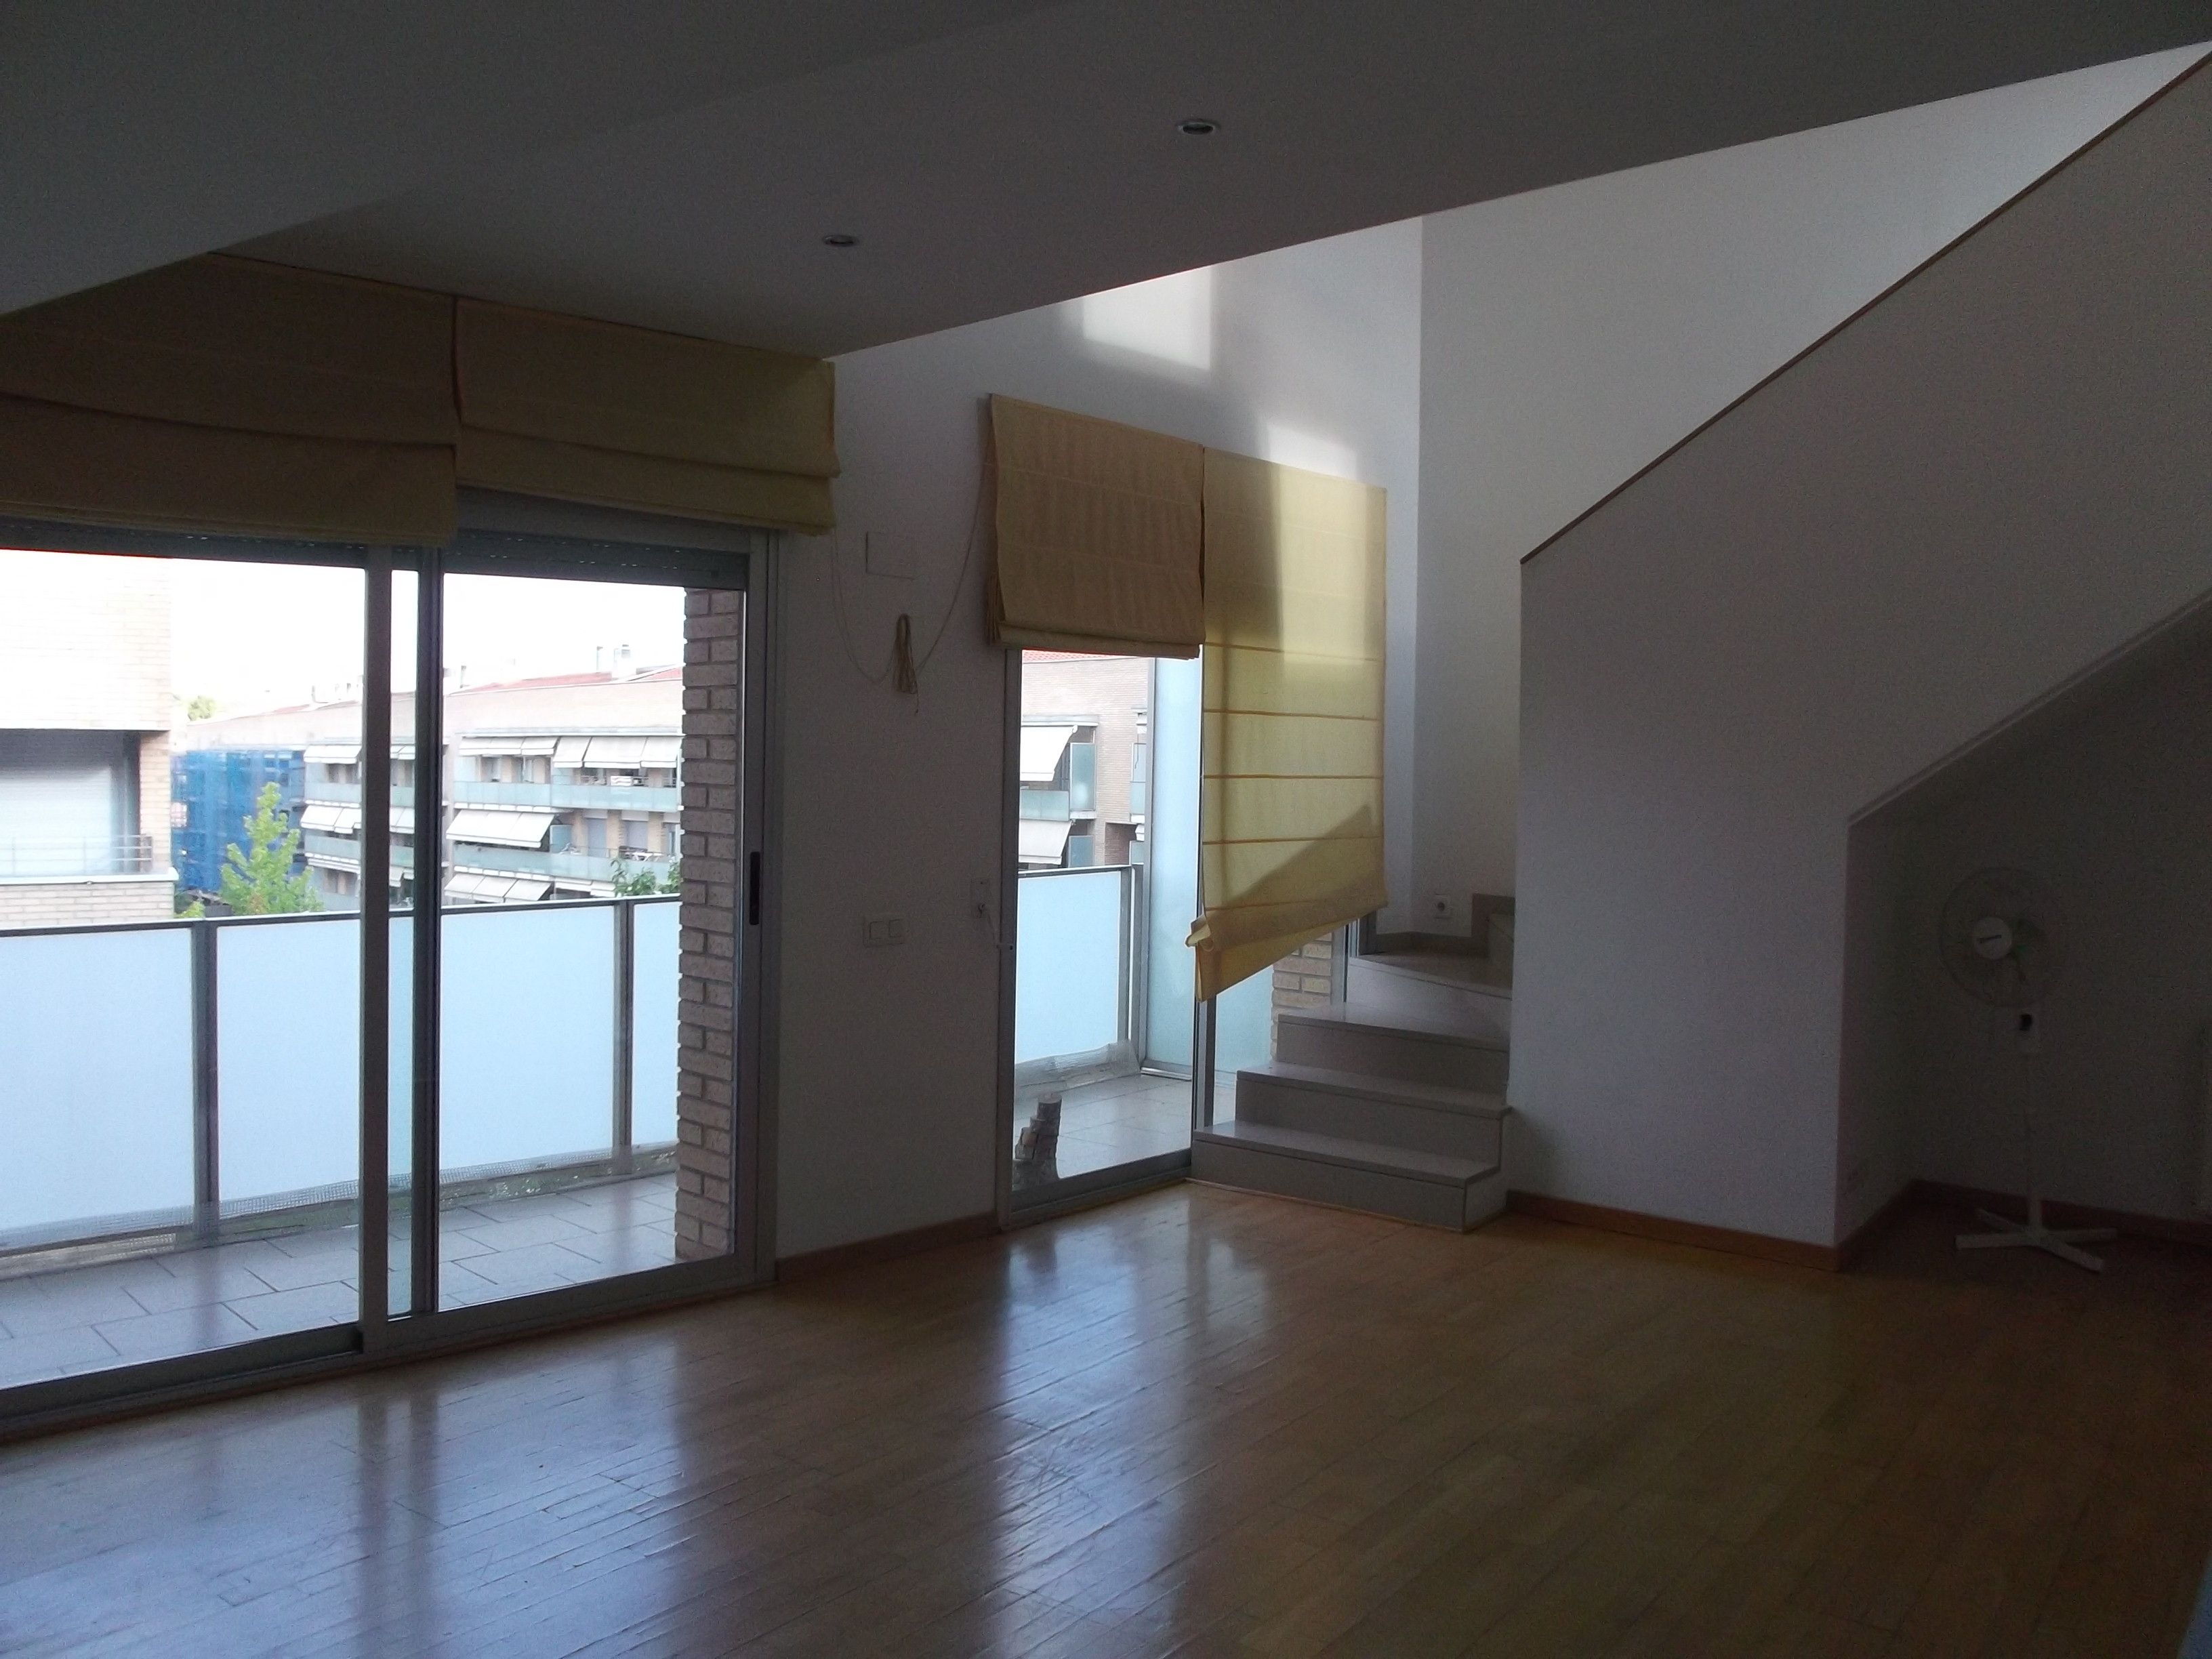 Àtica duplex de 106 m2. 2 habitacions, 2 banys i 1 estudi. Zona comunitària. FOTO: Cedida